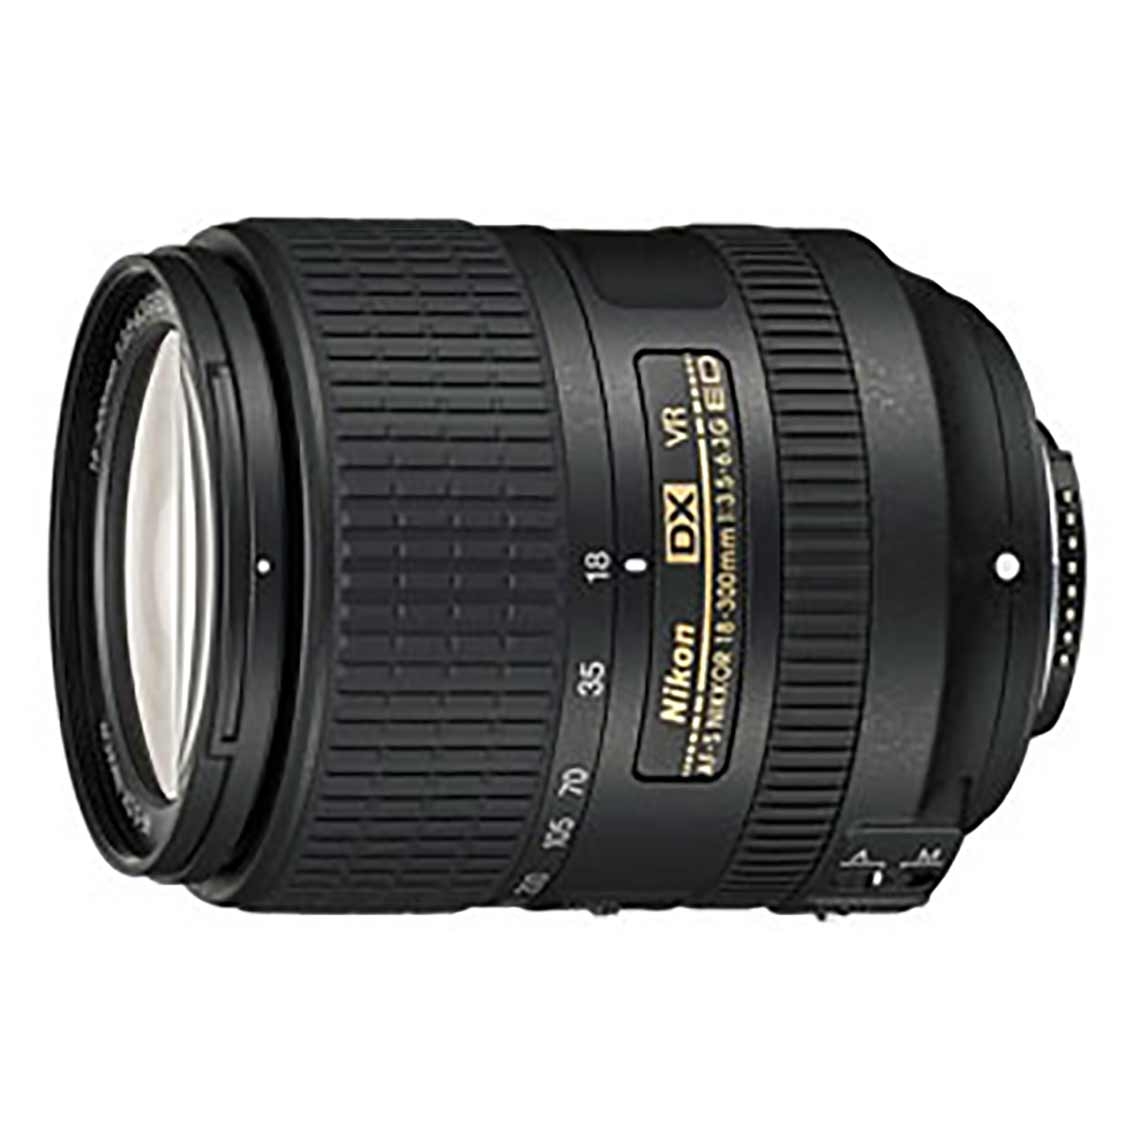 Nikon AF-S DX NIKKOR 18-300mm F3.5-6.3G ED VR Lens